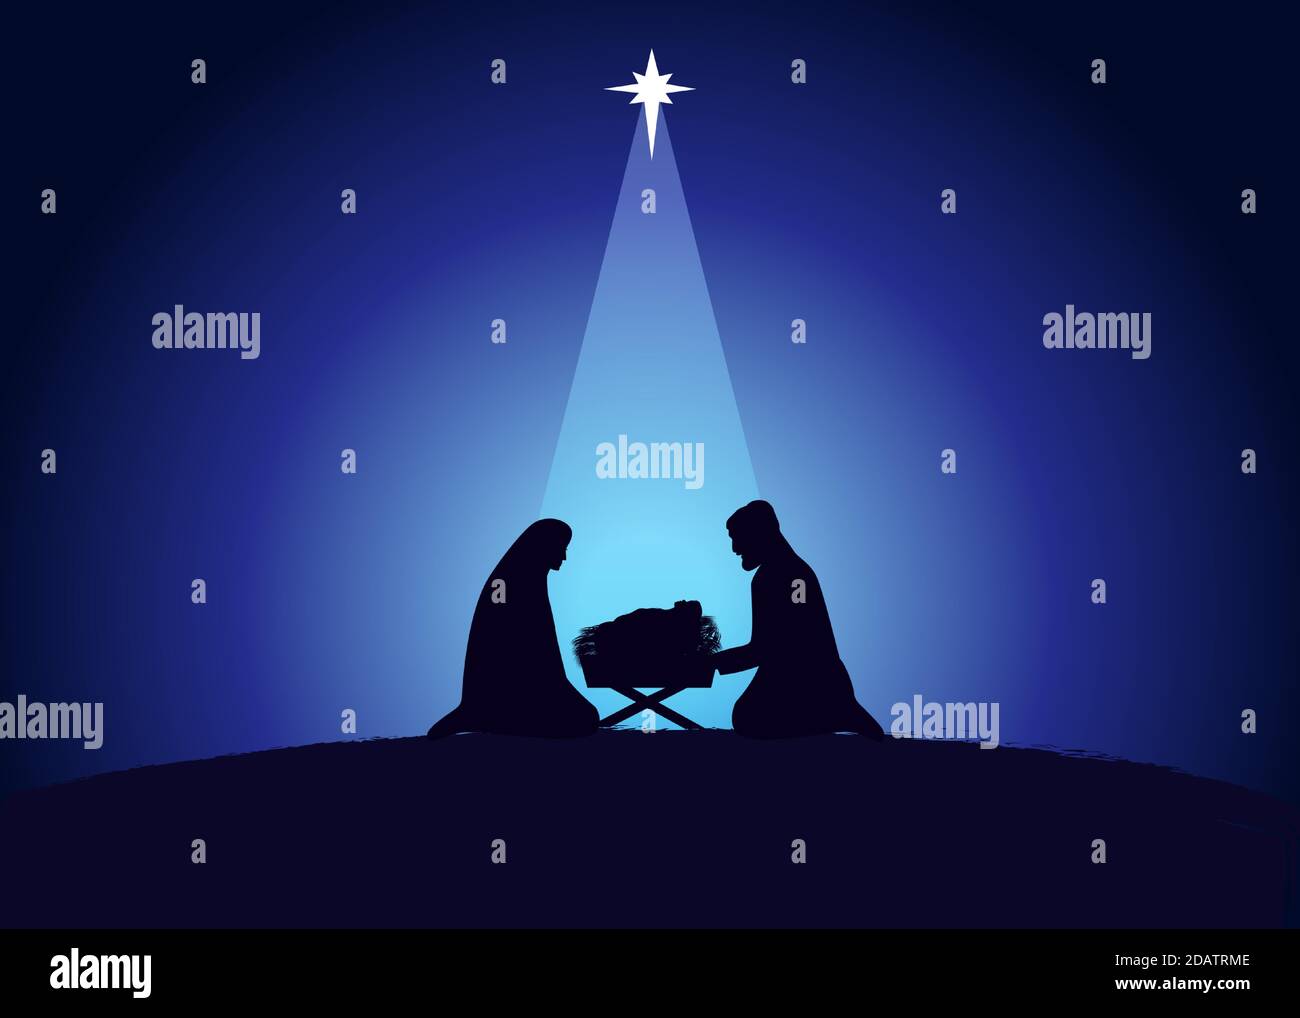 Weihnachtsszene des Jesuskindes in der Krippe mit Maria und Josef in Silhouette, umgeben von Stern. Christliche Geburt Grußkarte Geburt Christi. Stock Vektor